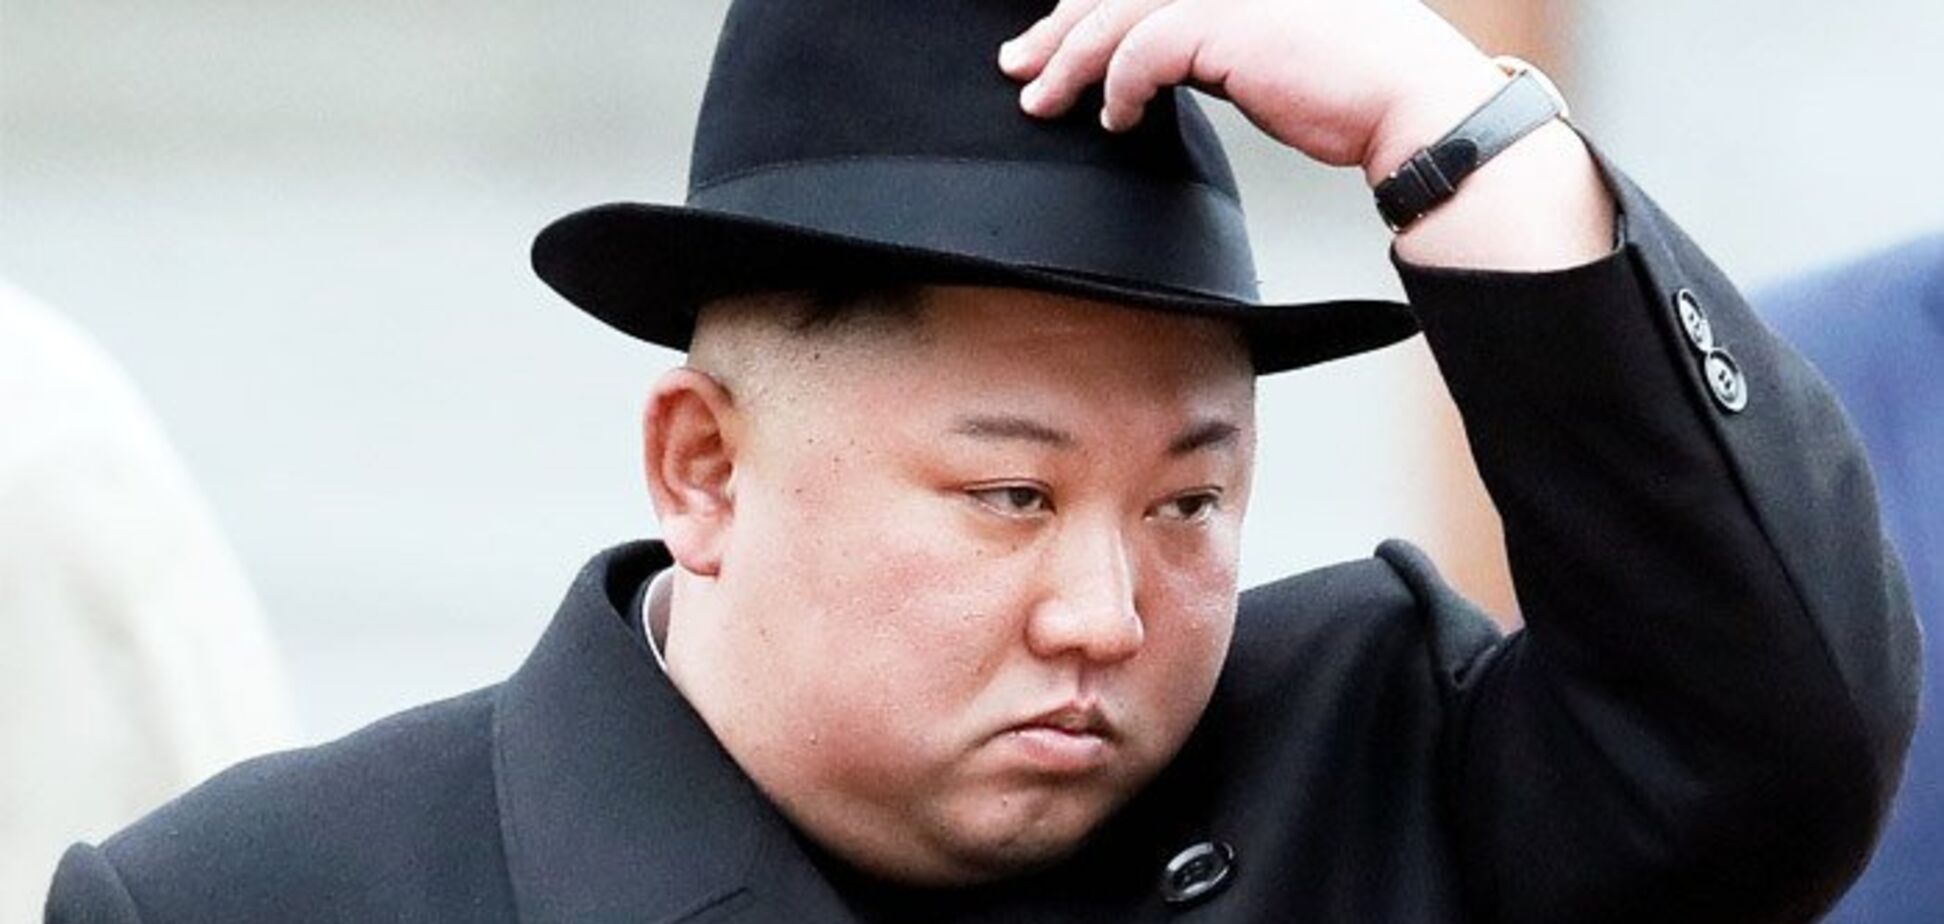 Черные колготки и кружева: как выглядит загадочная жена Ким Чен Ына